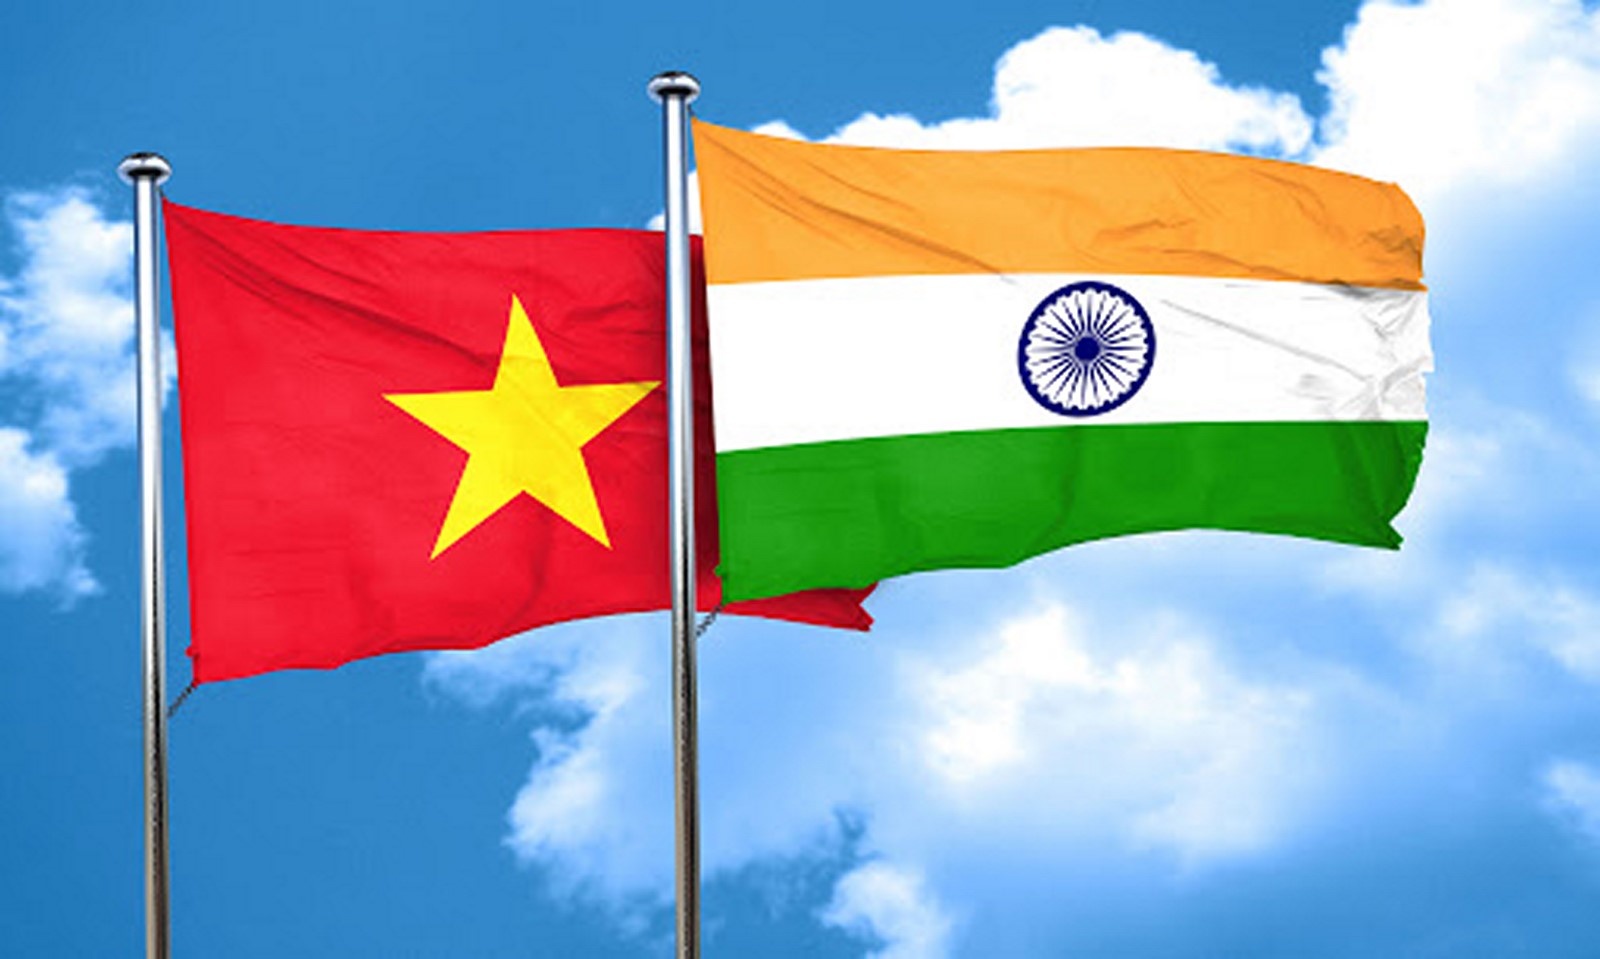 Cơ hội “bắt tay” về dược phẩm Việt Nam - Ấn Độ